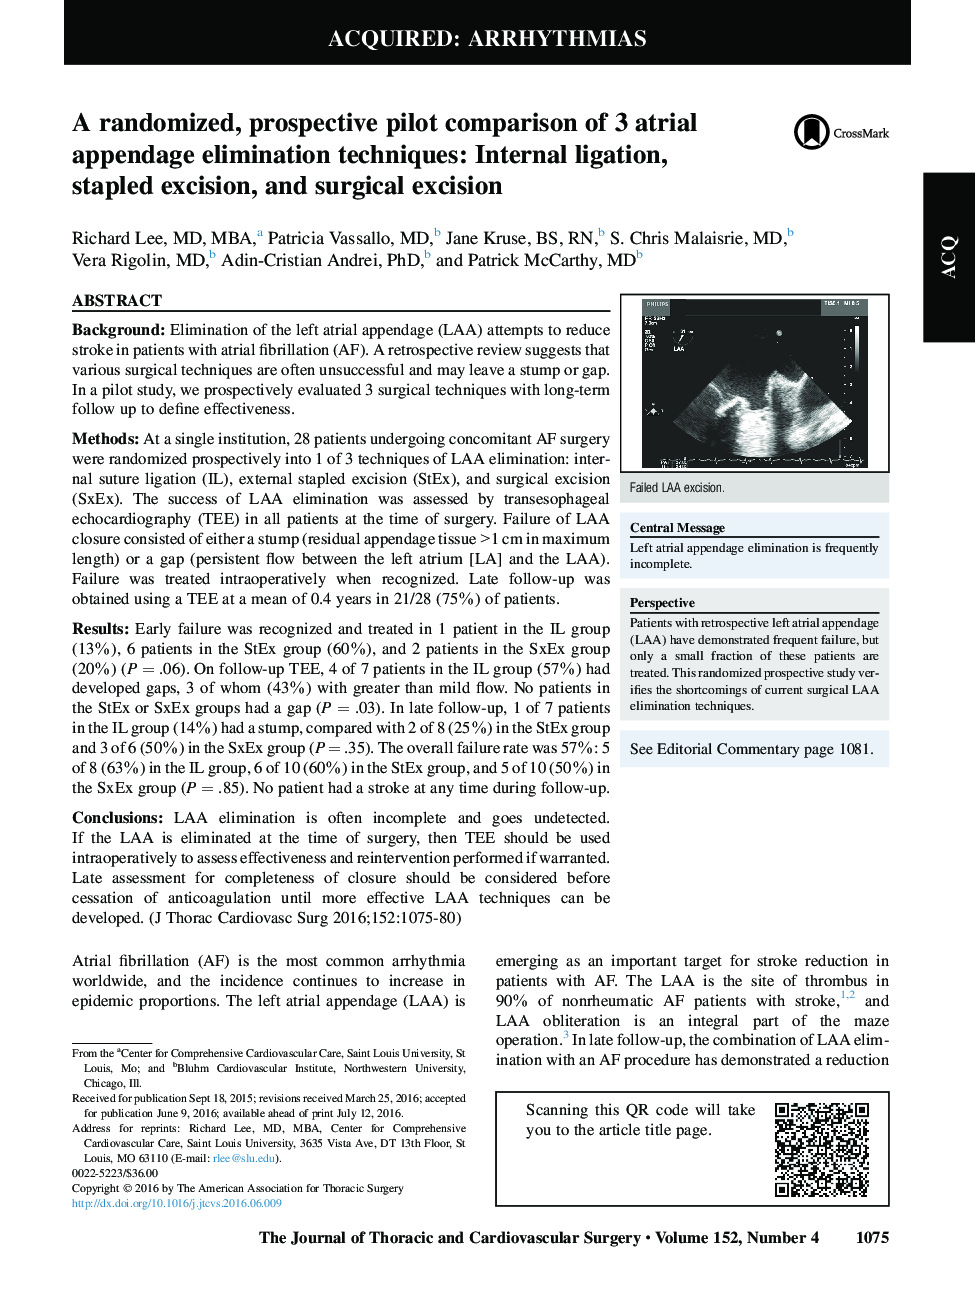 A randomized, prospective pilot comparison of 3 atrial appendage elimination techniques: Internal ligation, stapled excision, and surgical excision